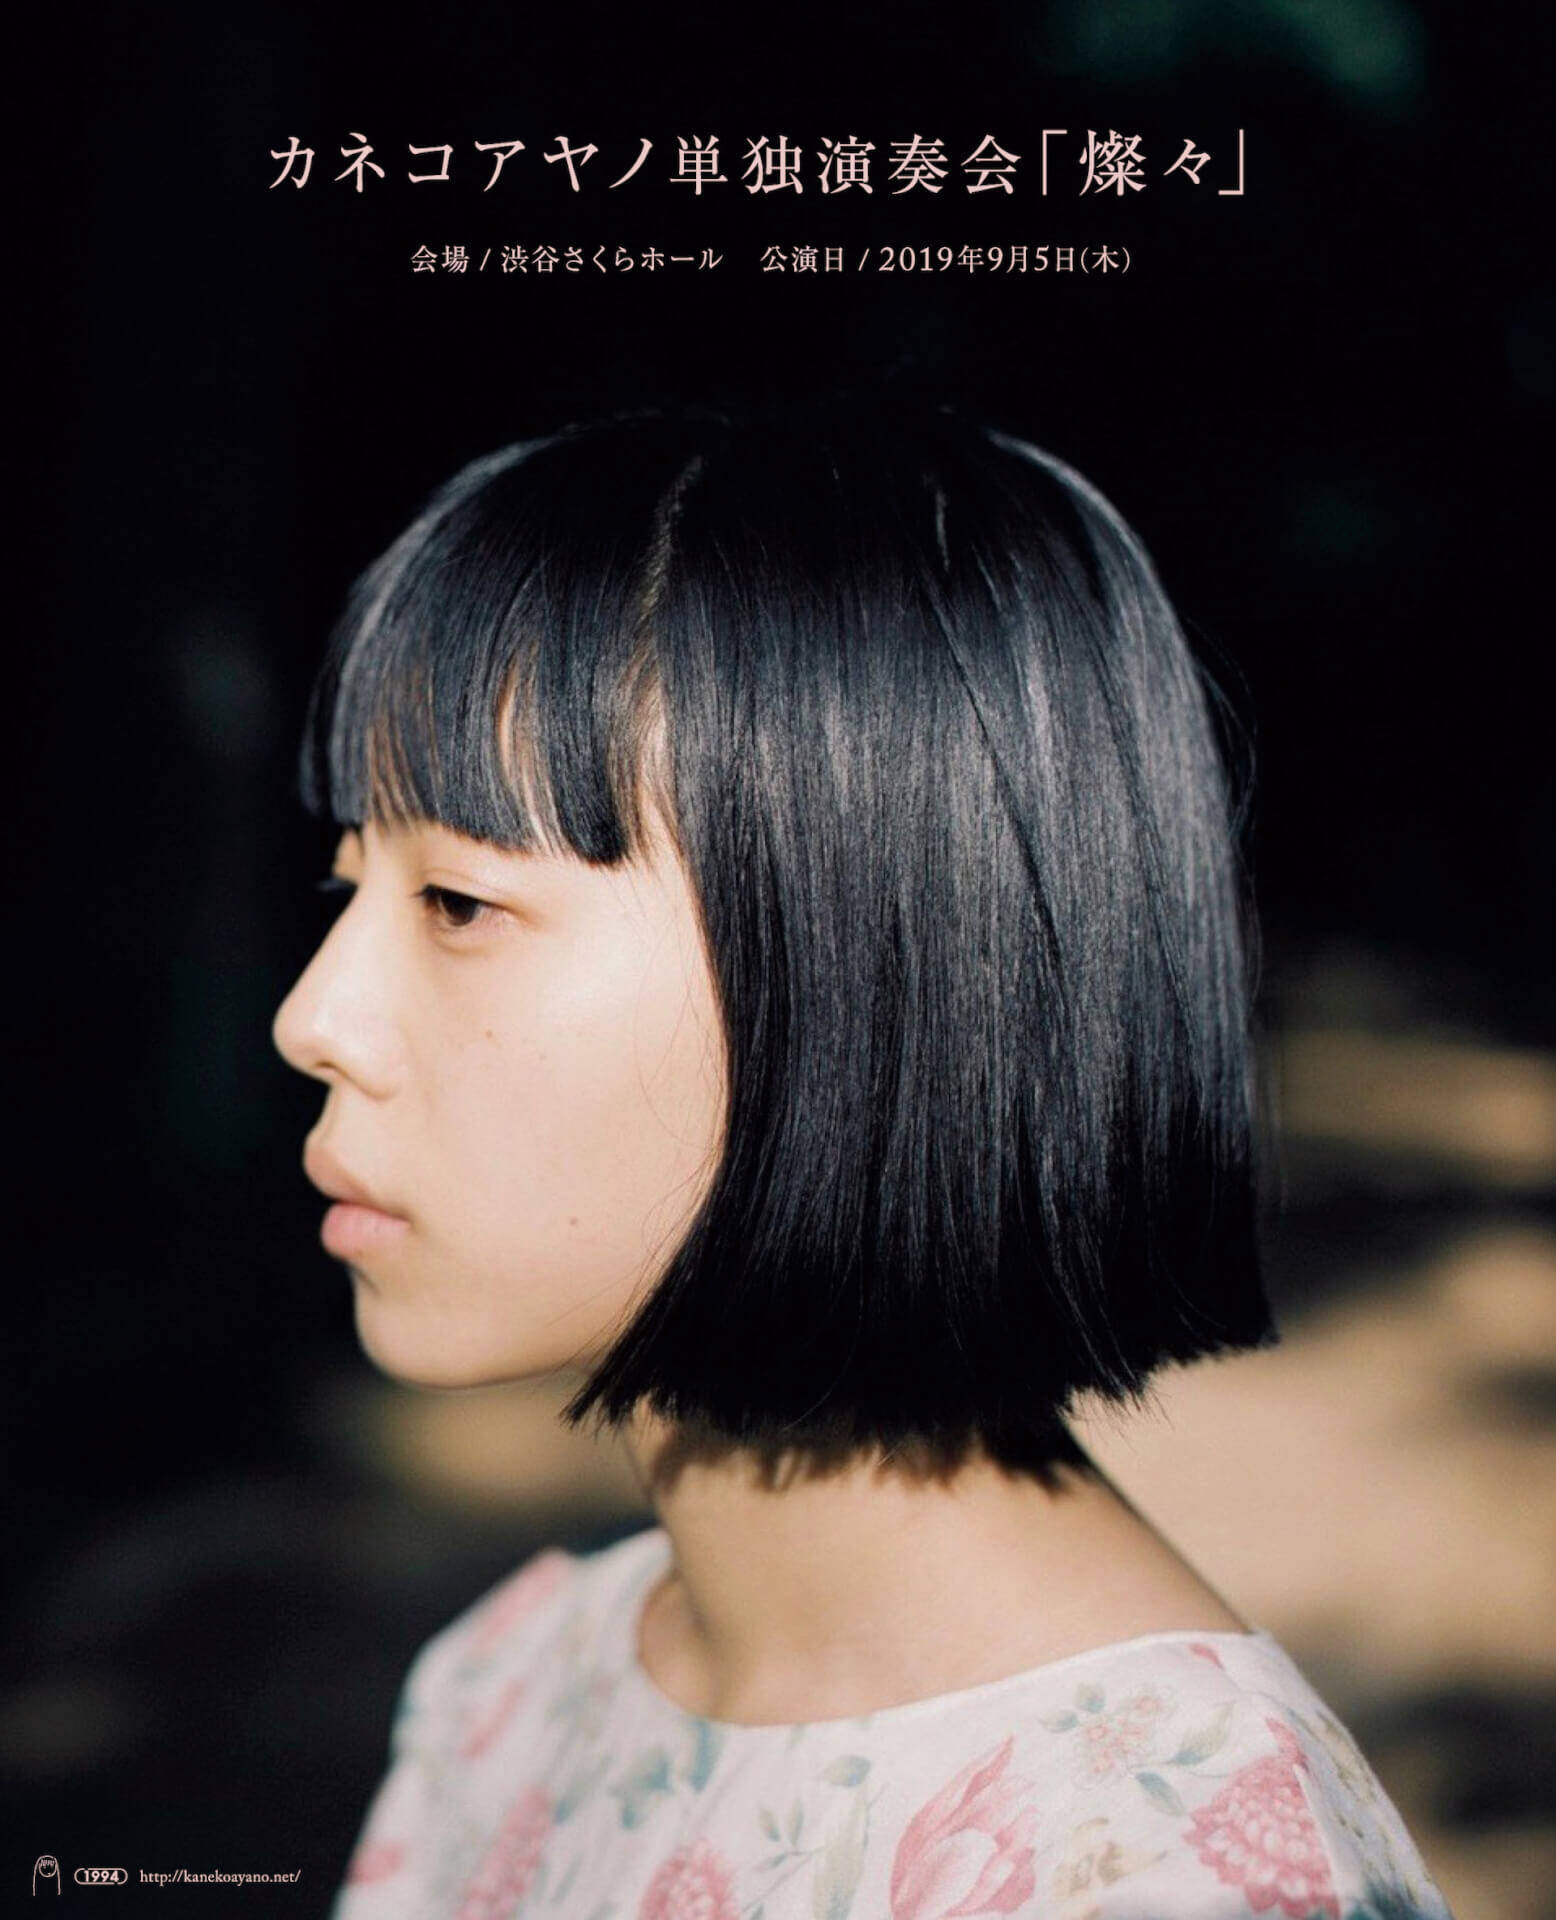 カネコアヤノ、9月発売の新AL『燦々』収録曲「光の方へ」のMVを公開｜監督は岡田貴之